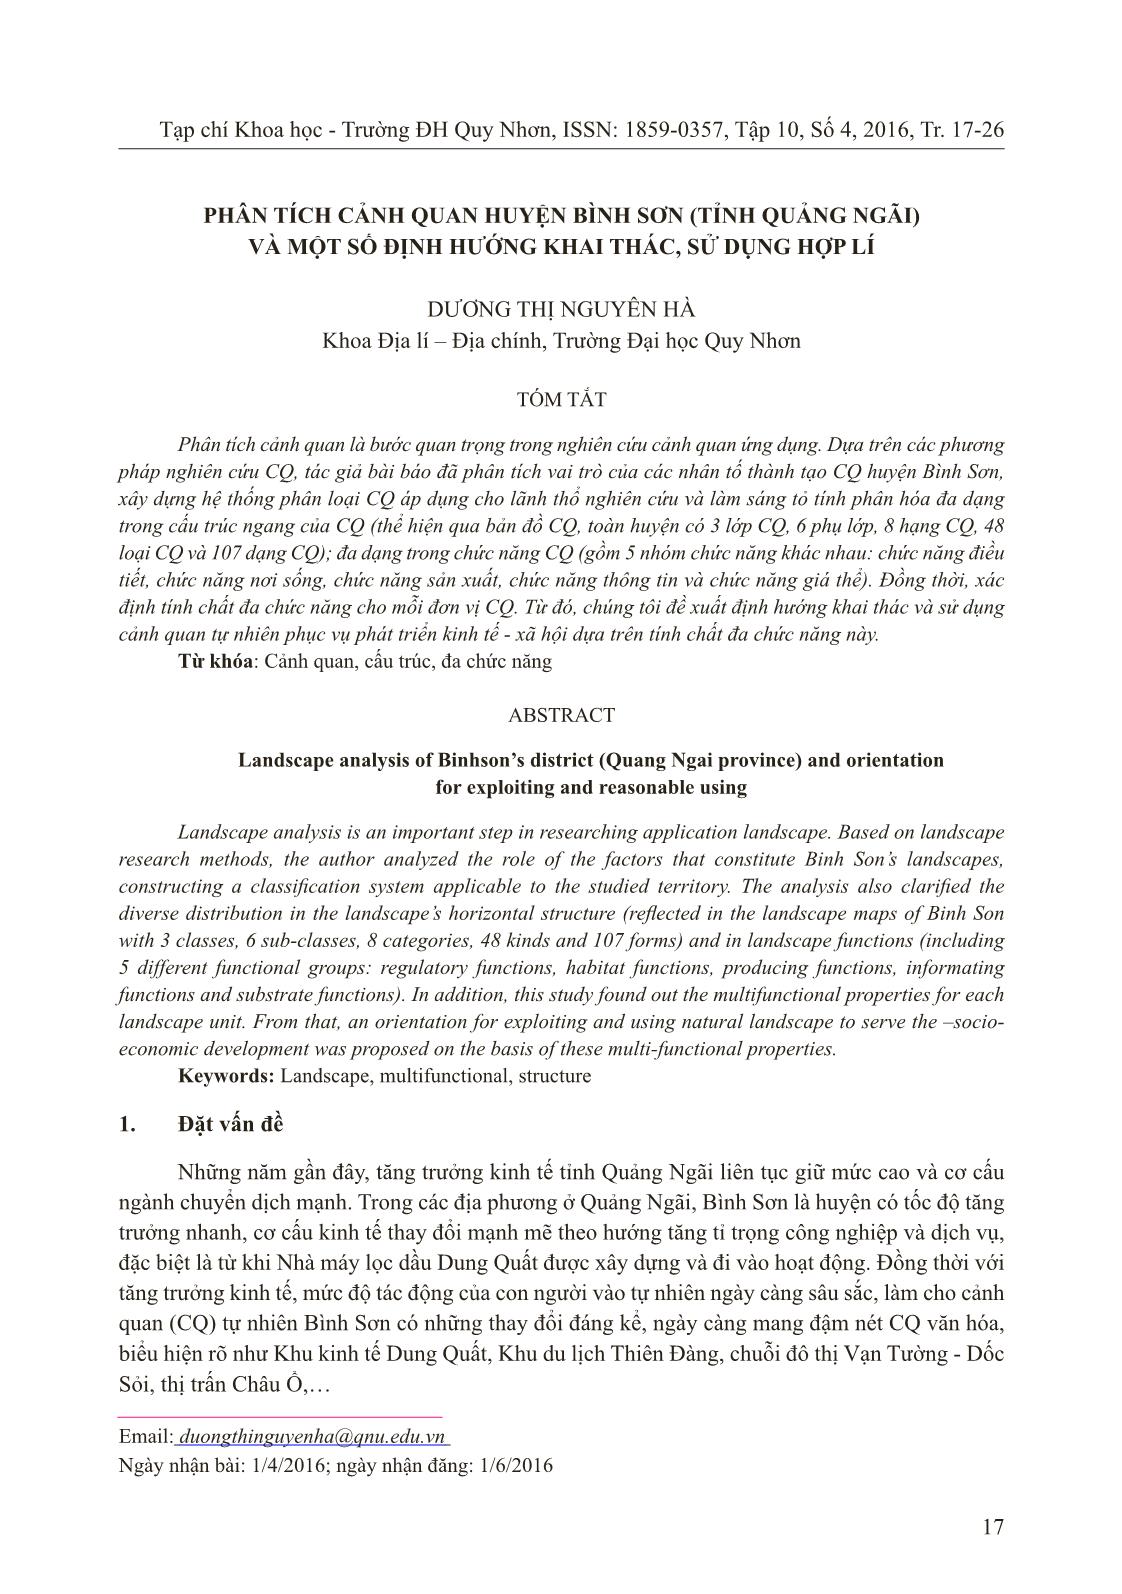 Phân tích cảnh quan huyện Bình Sơn (tỉnh Quảng Ngãi) và một số định hướng khai thác, sử dụng hợp lí trang 1